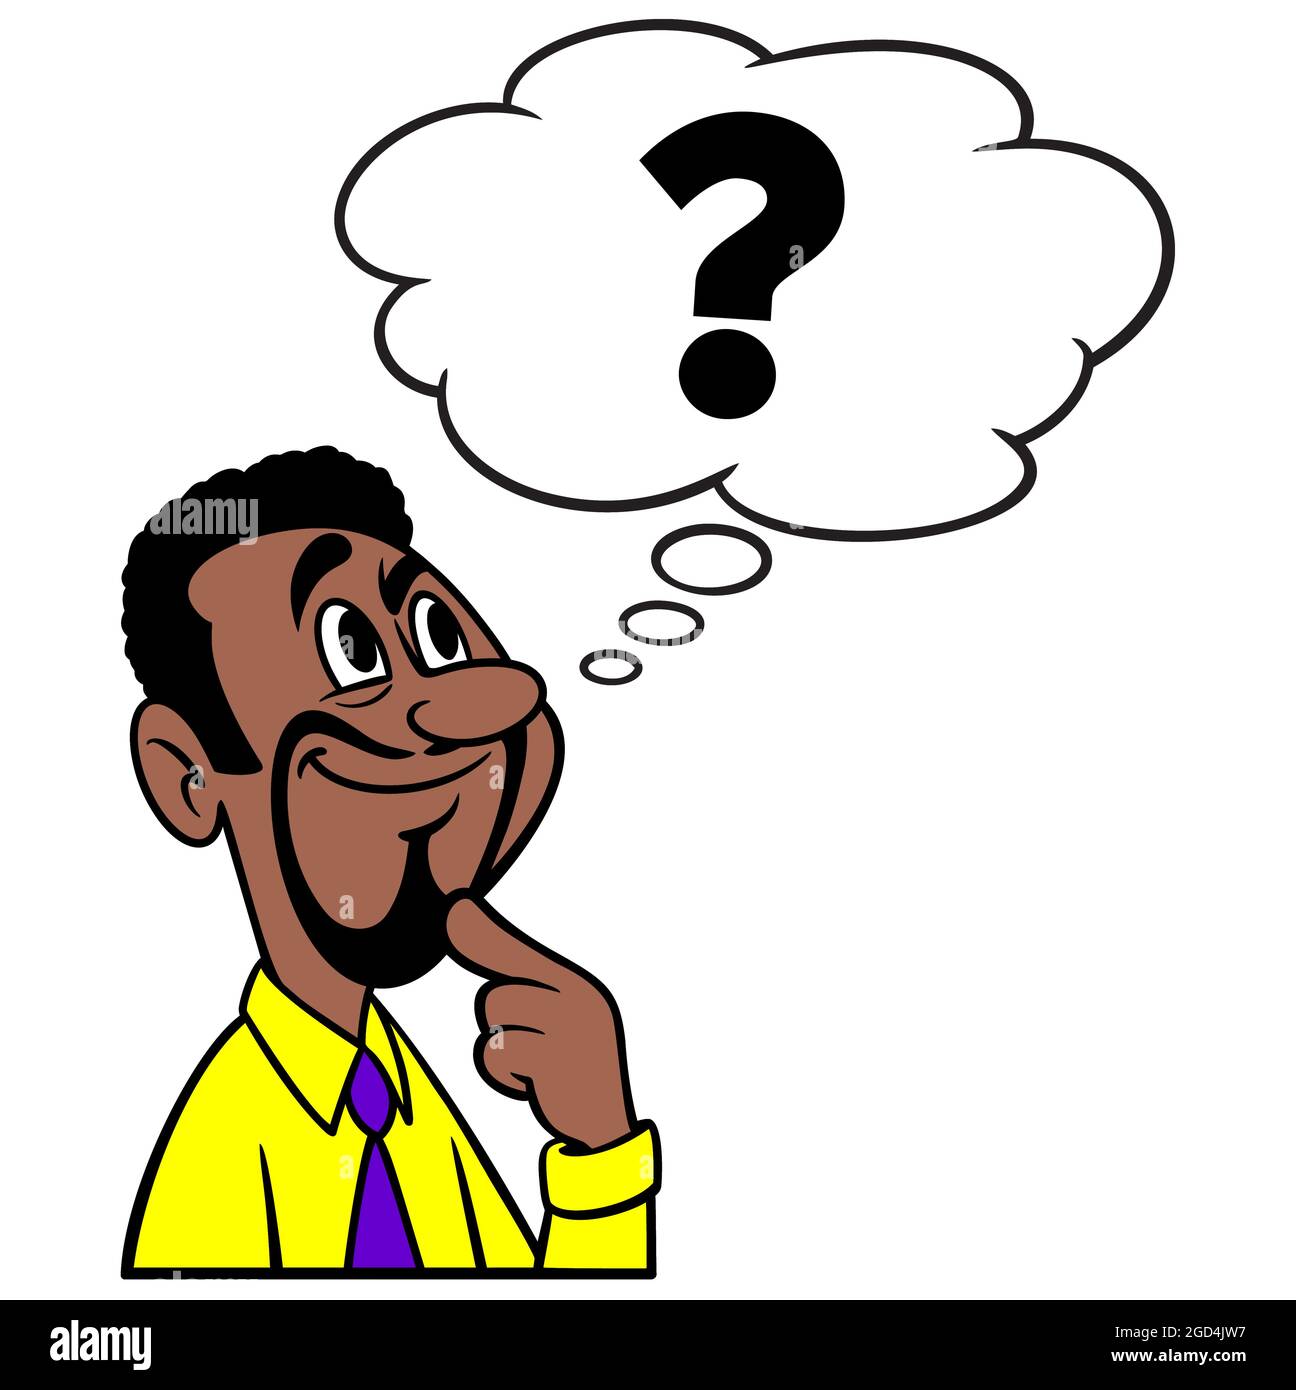 Mann denkt an Fragen - EINE Cartoon-Illustration eines Mannes, der an unbeantwortete Fragen denkt. Stock Vektor